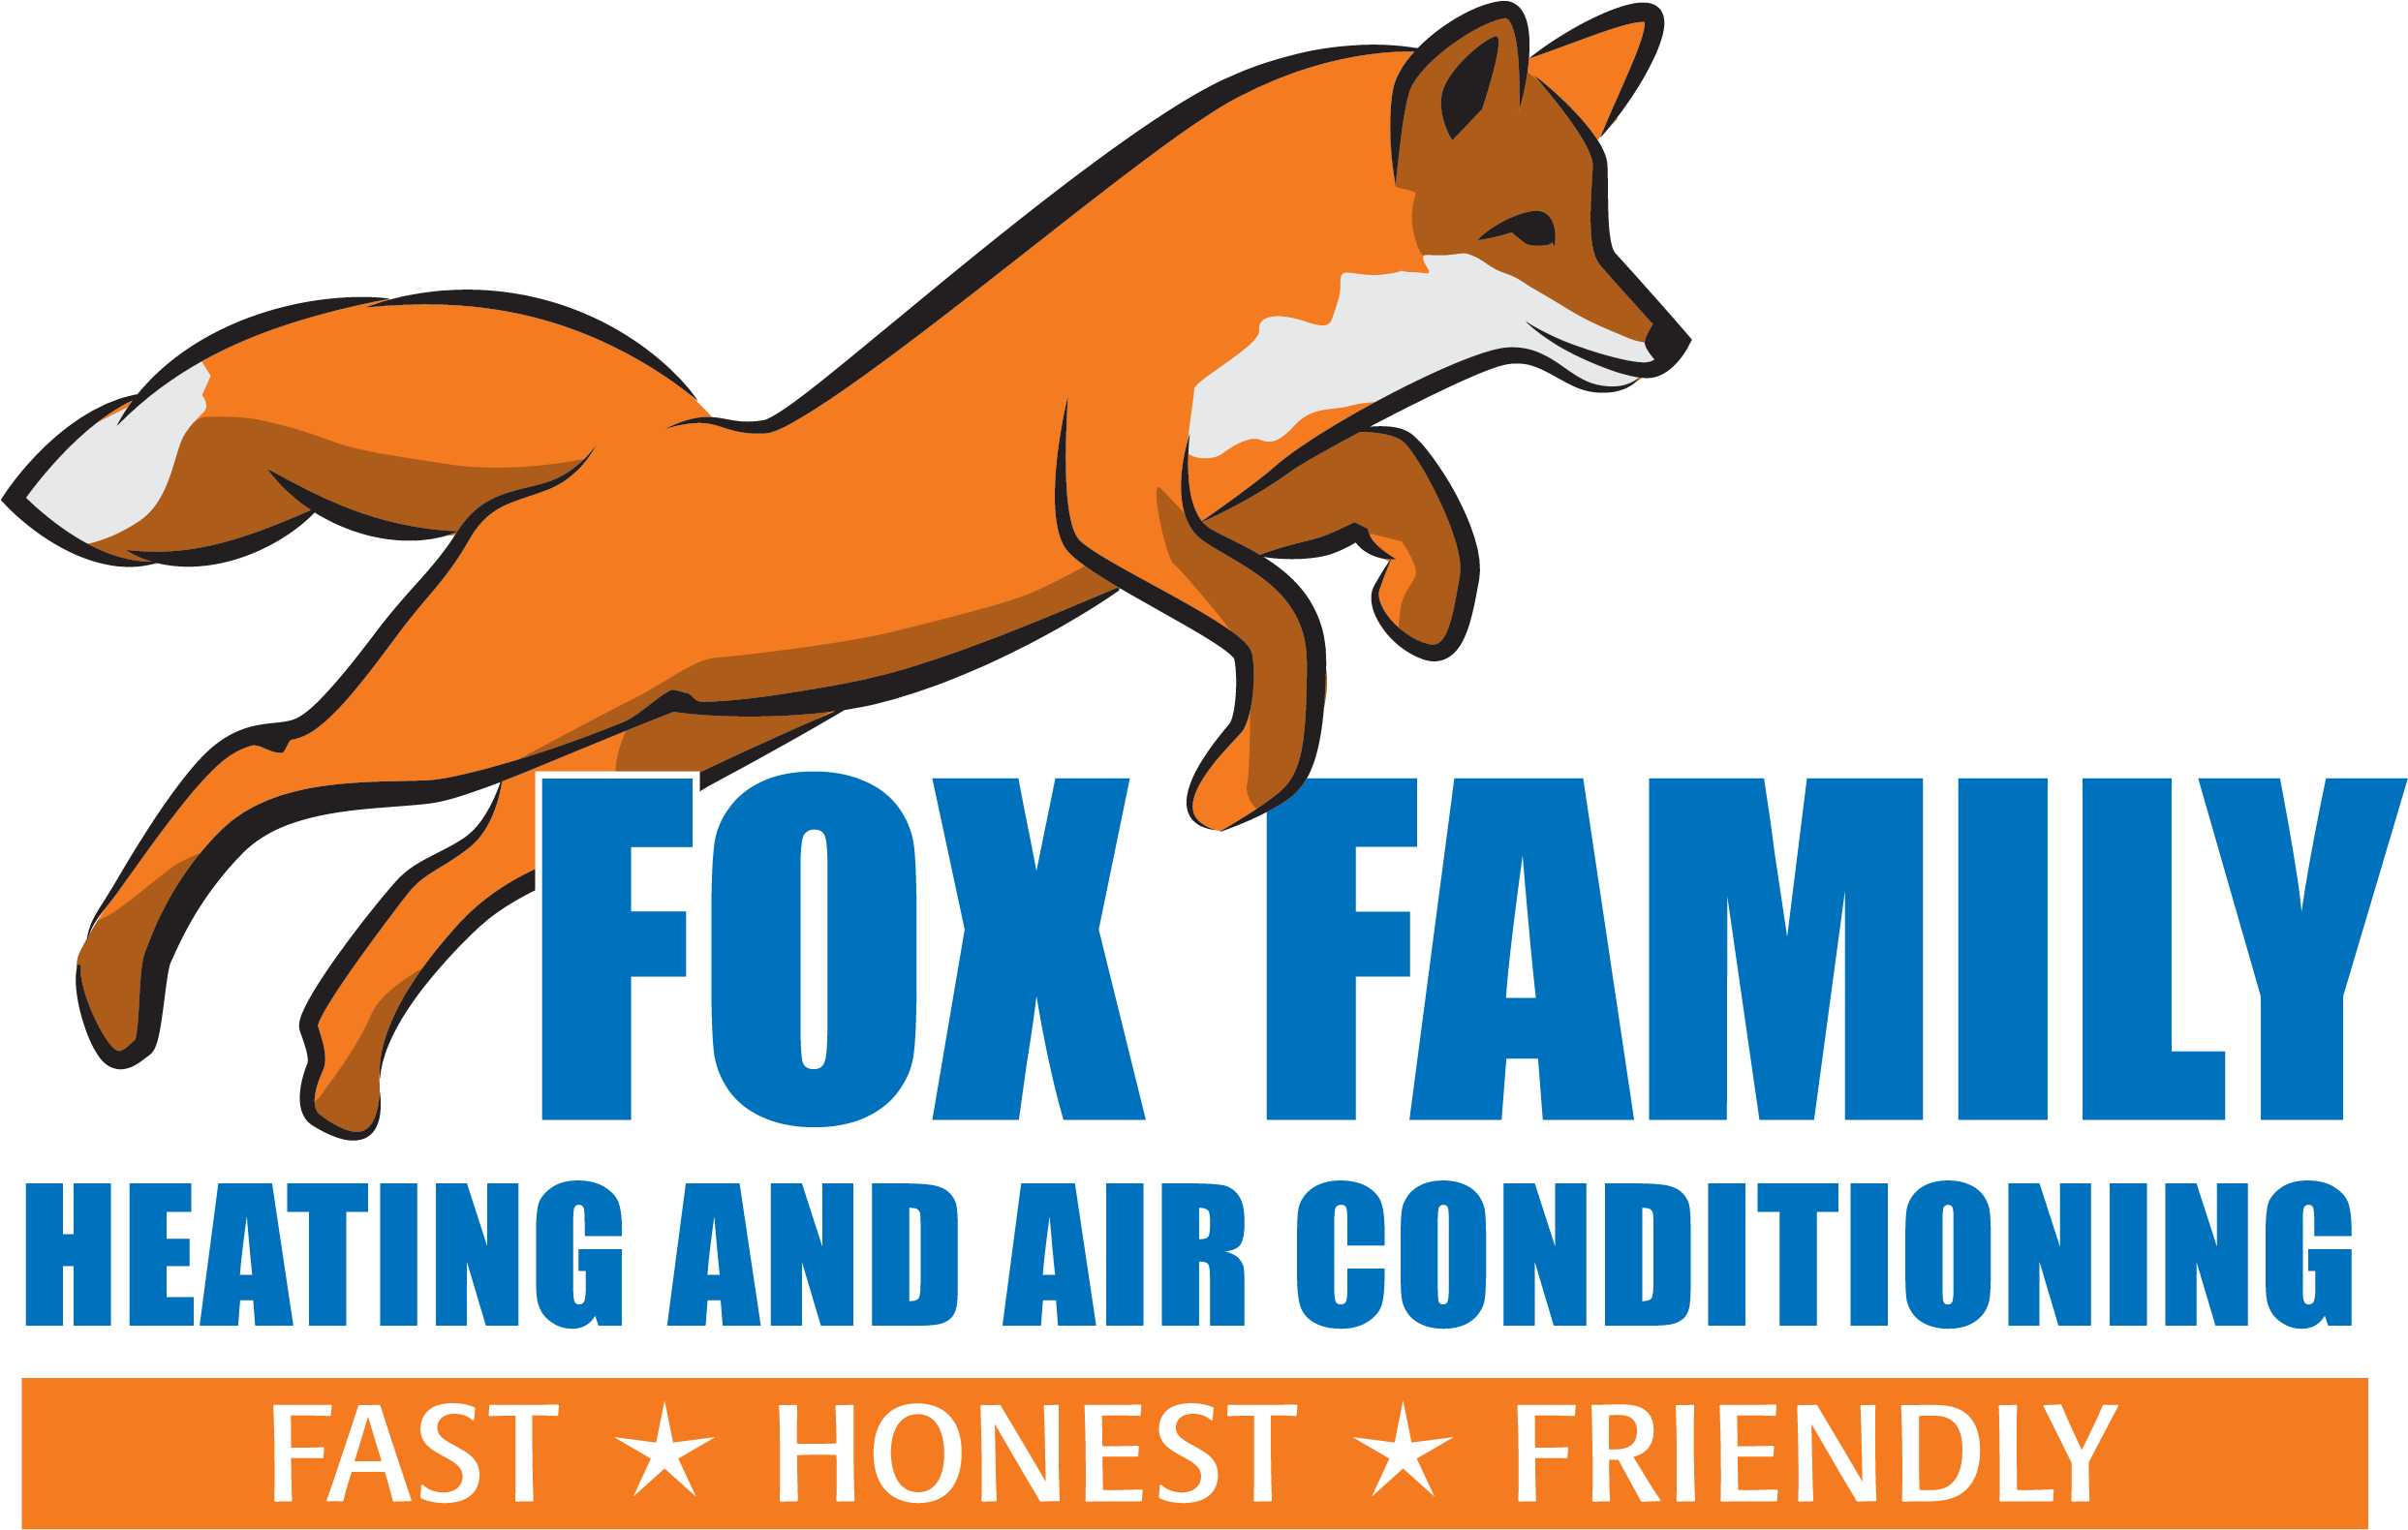 Air foxes